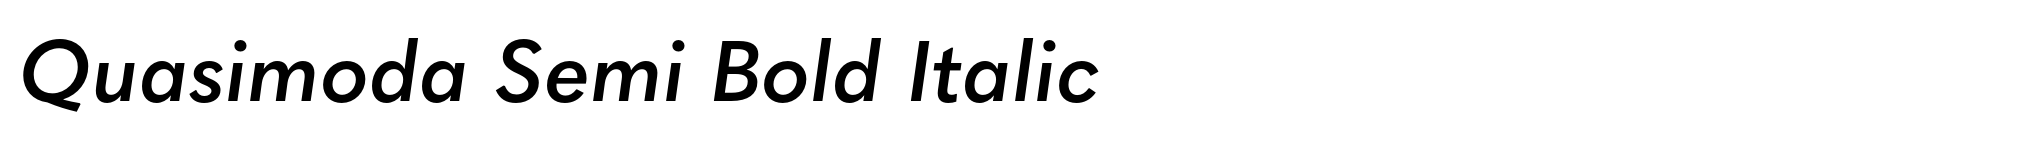 Quasimoda Semi Bold Italic image